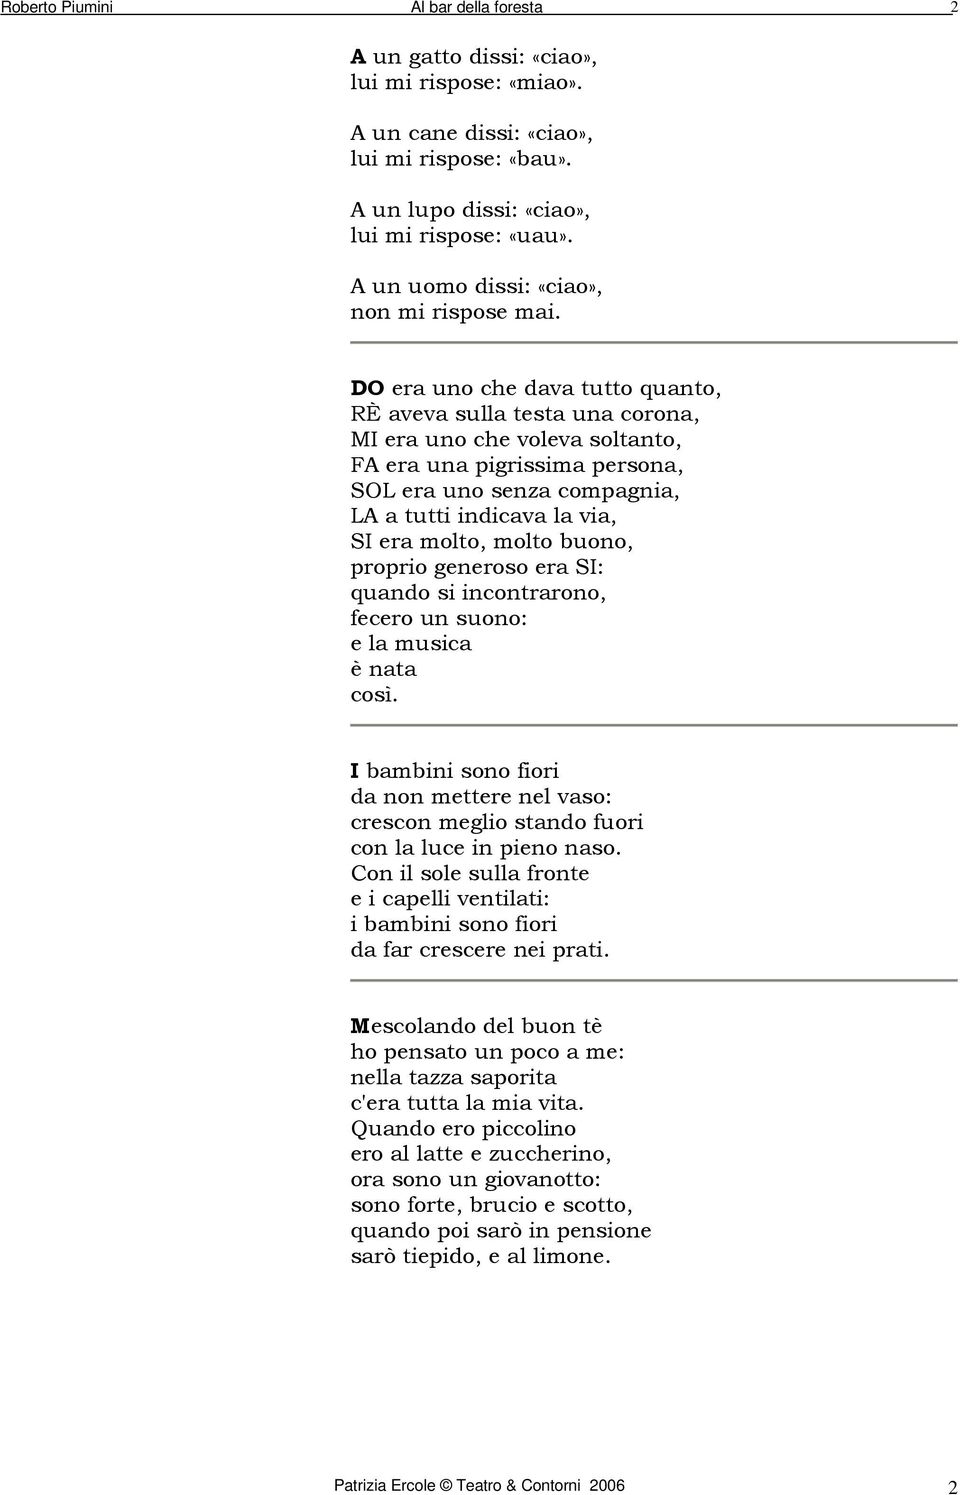 Poesie Di Natale Roberto Piumini.Poesie Di Roberto Piumini Pdf Free Download